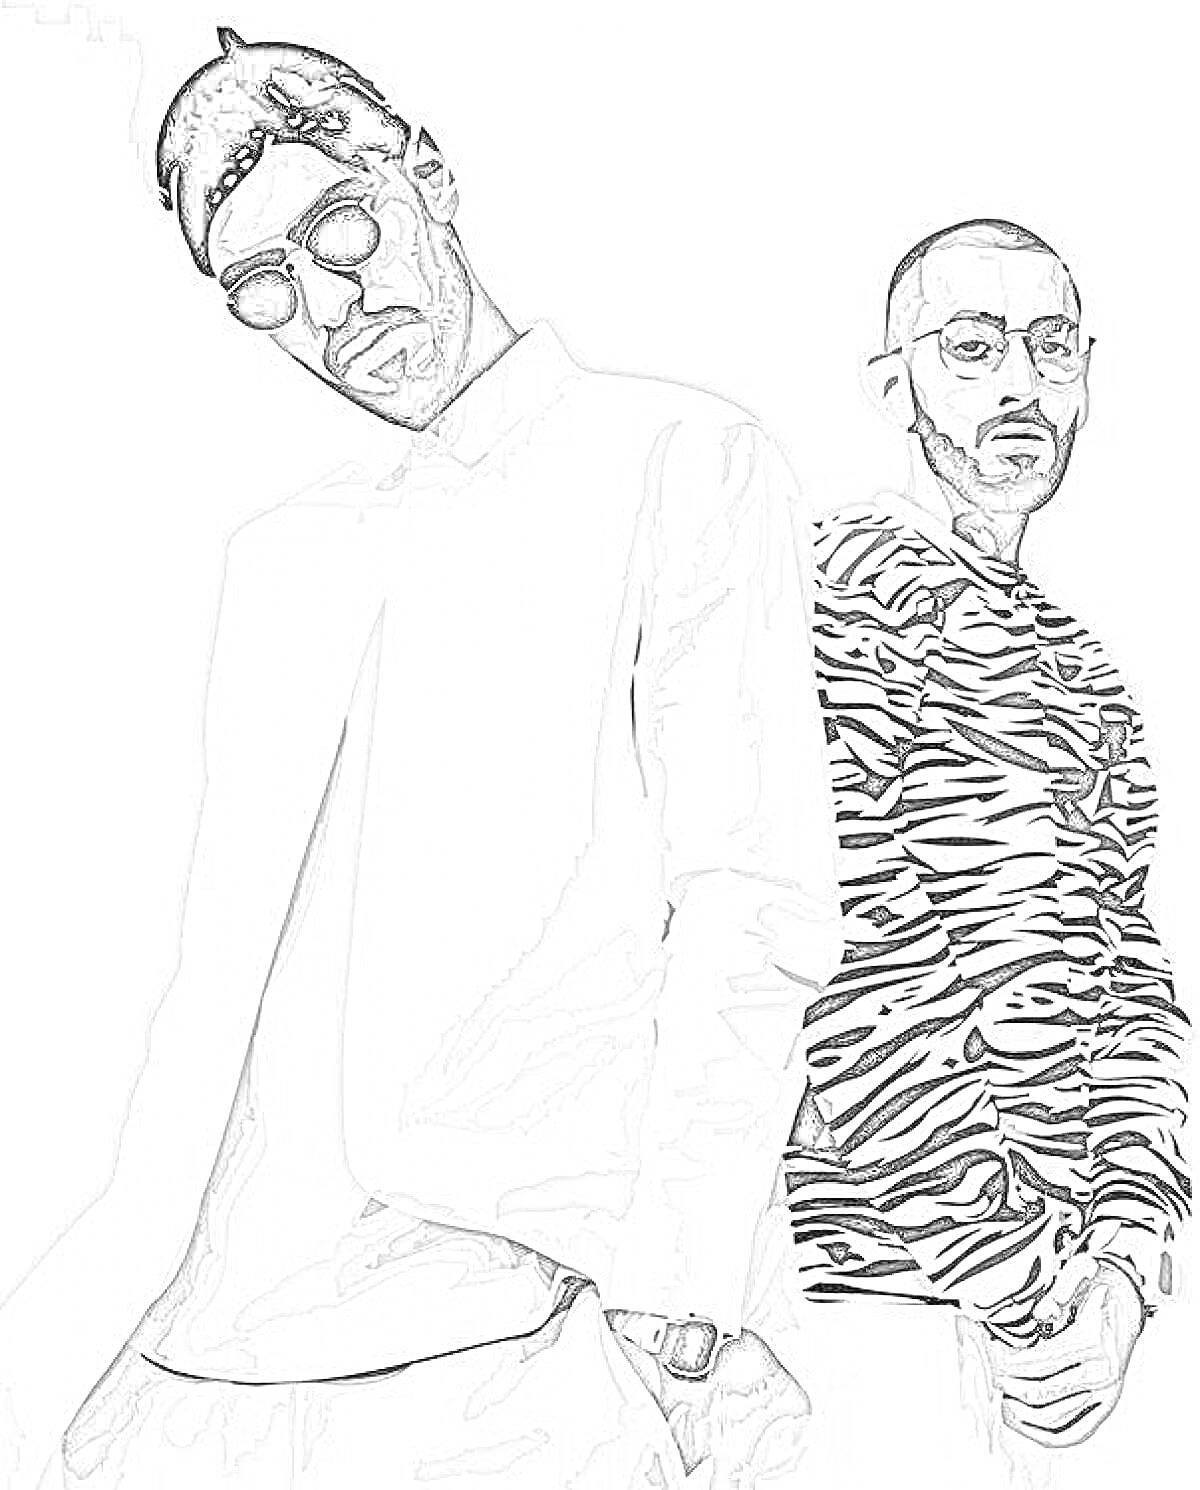 Раскраска Мужчины в стильной одежде: один в белой рубашке и солнцезащитных очках, второй в кофте с зебровым принтом и очках.